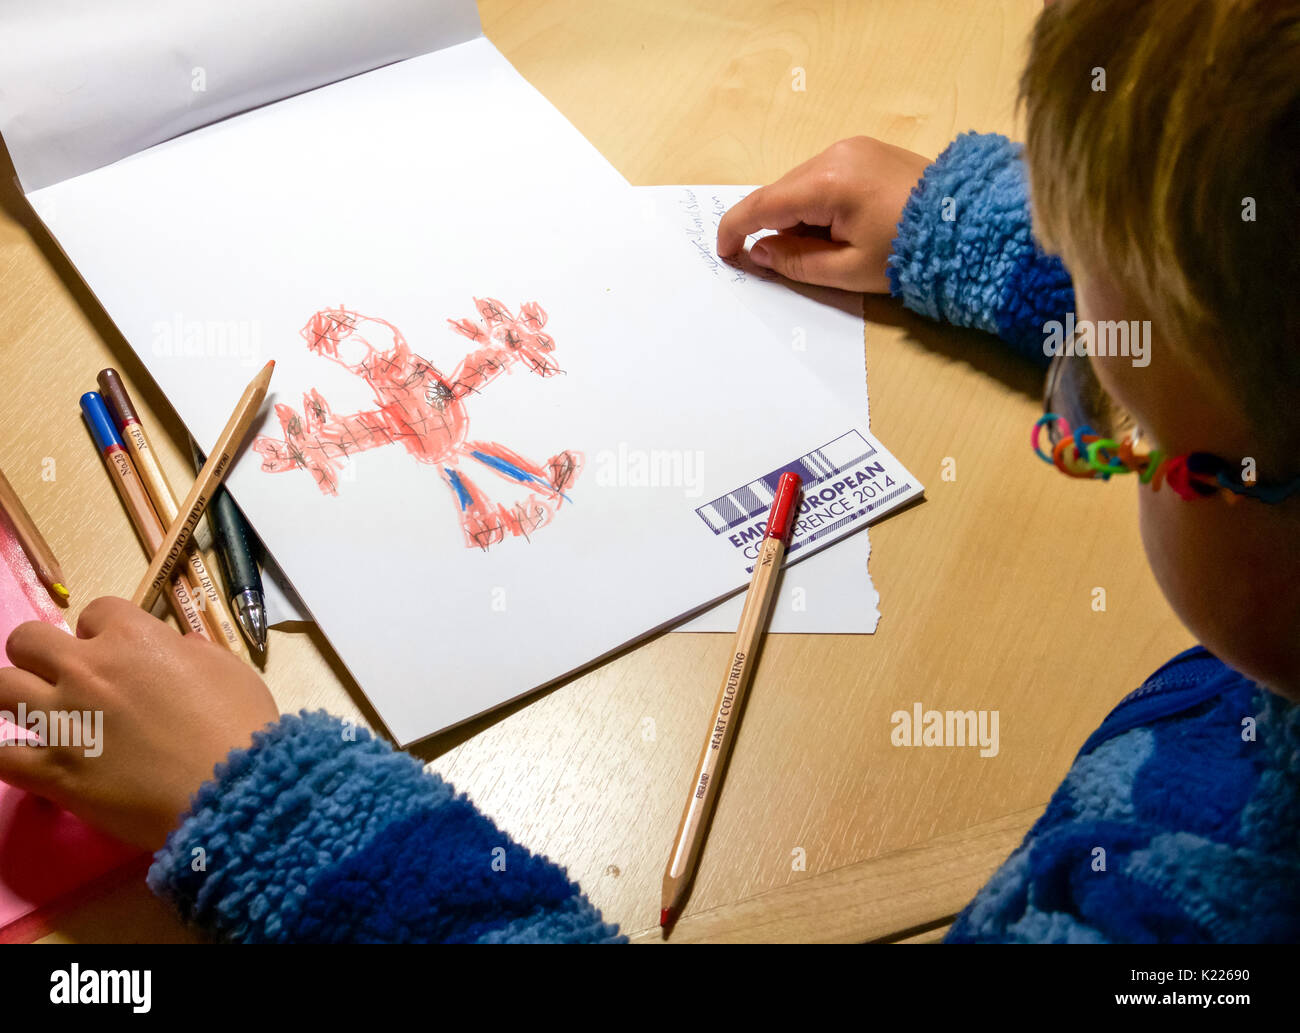 Junge mit Brille am Schreibtisch zu bewundern sein Bild von Spiderman mit Buntstiften auf Konferenz schrott Papier gezeichnet Stockfoto